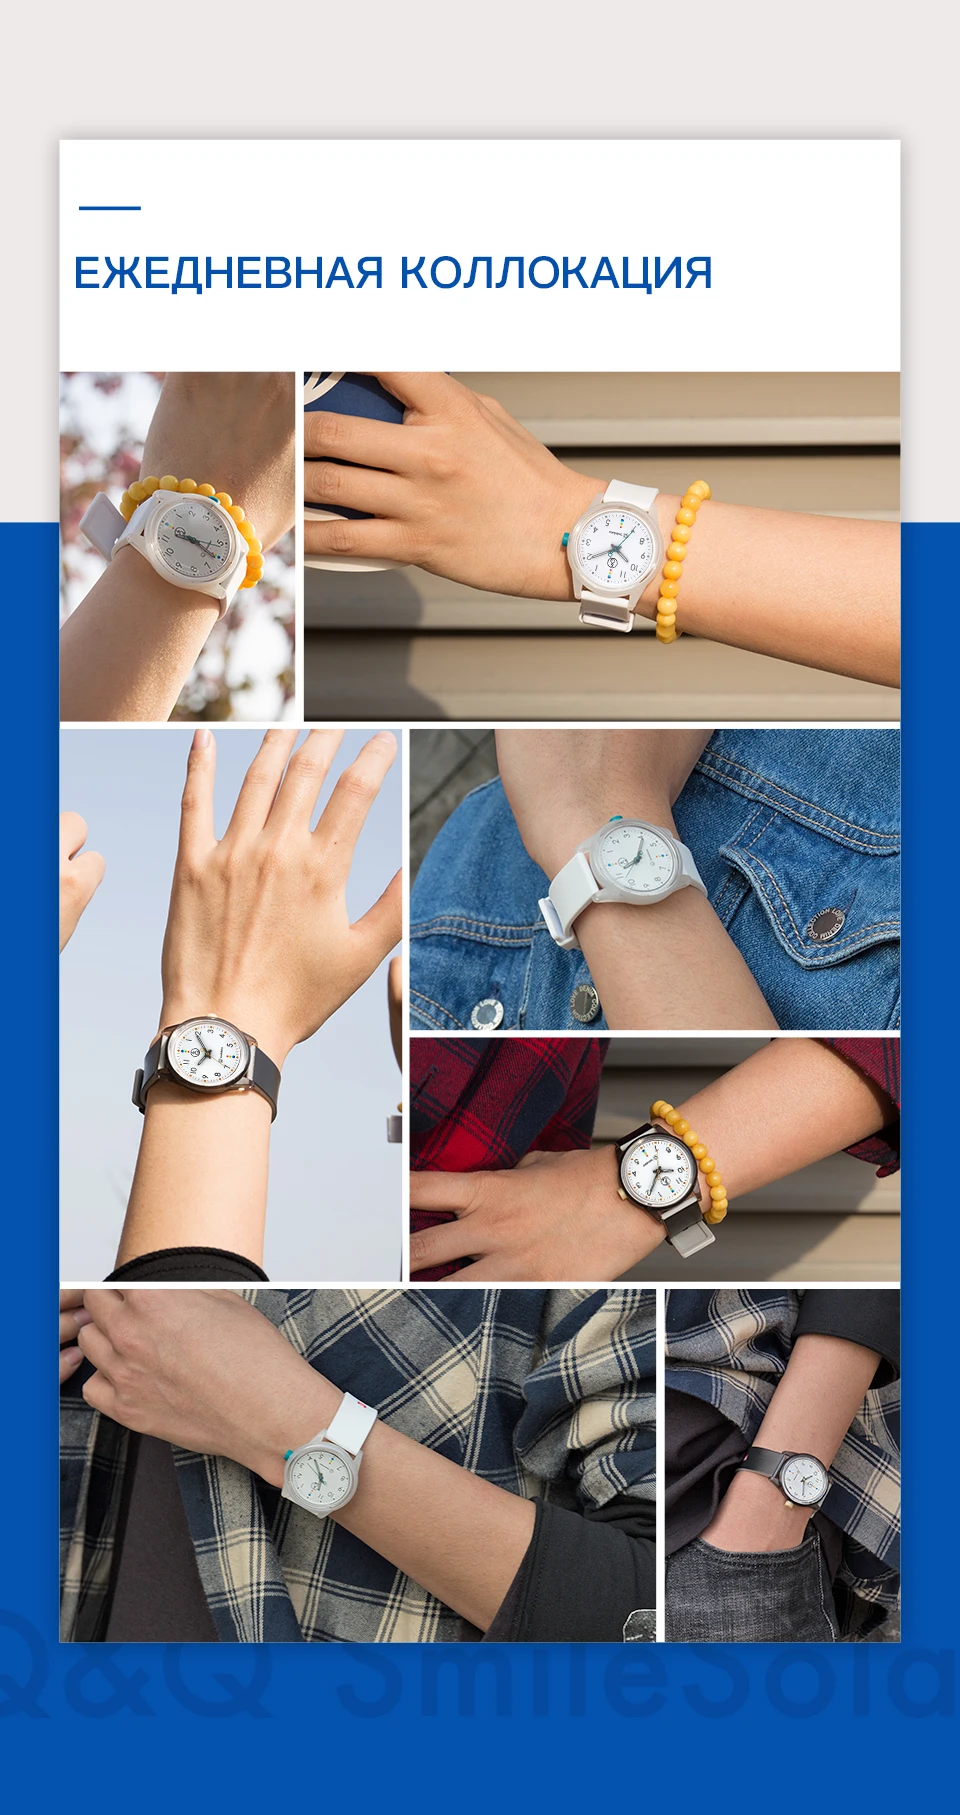 Citizen Q& Q часы для женщин Женские Подарочные часы Топ люксовый бренд водонепроницаемые спортивные Кварцевые солнечные нейтральные часы для женщин часы relogio